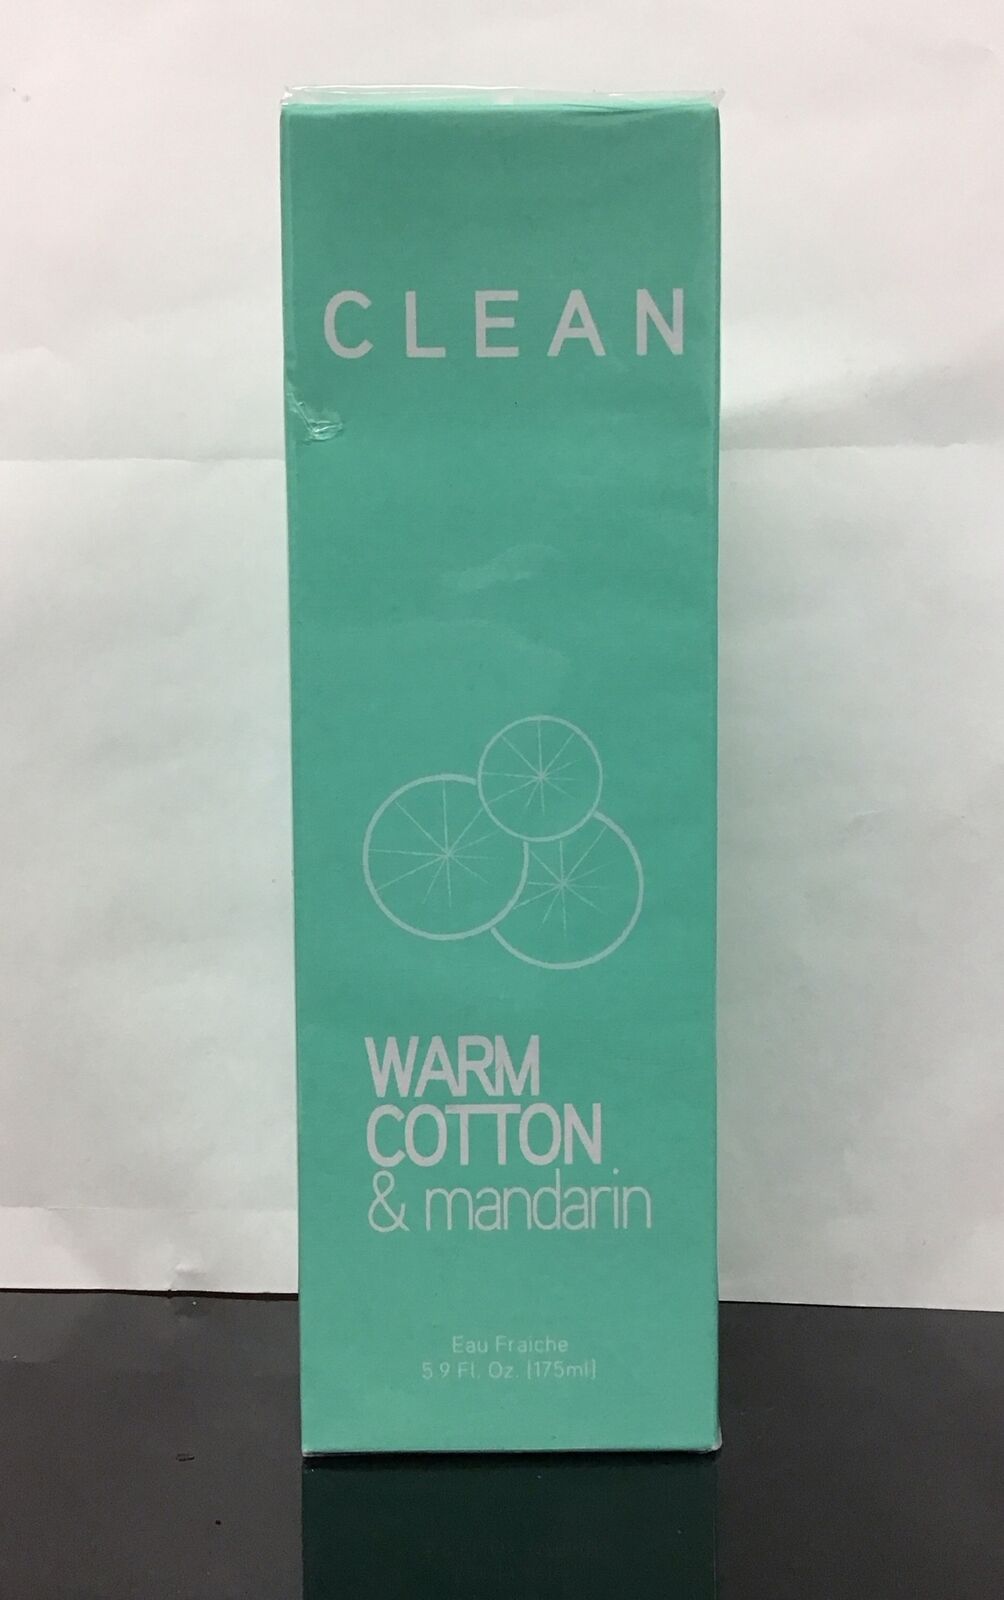 Clean Warm Cotton & Mandarin Eau Fraiche Spray 5.9 Fl Oz, As Pictured.